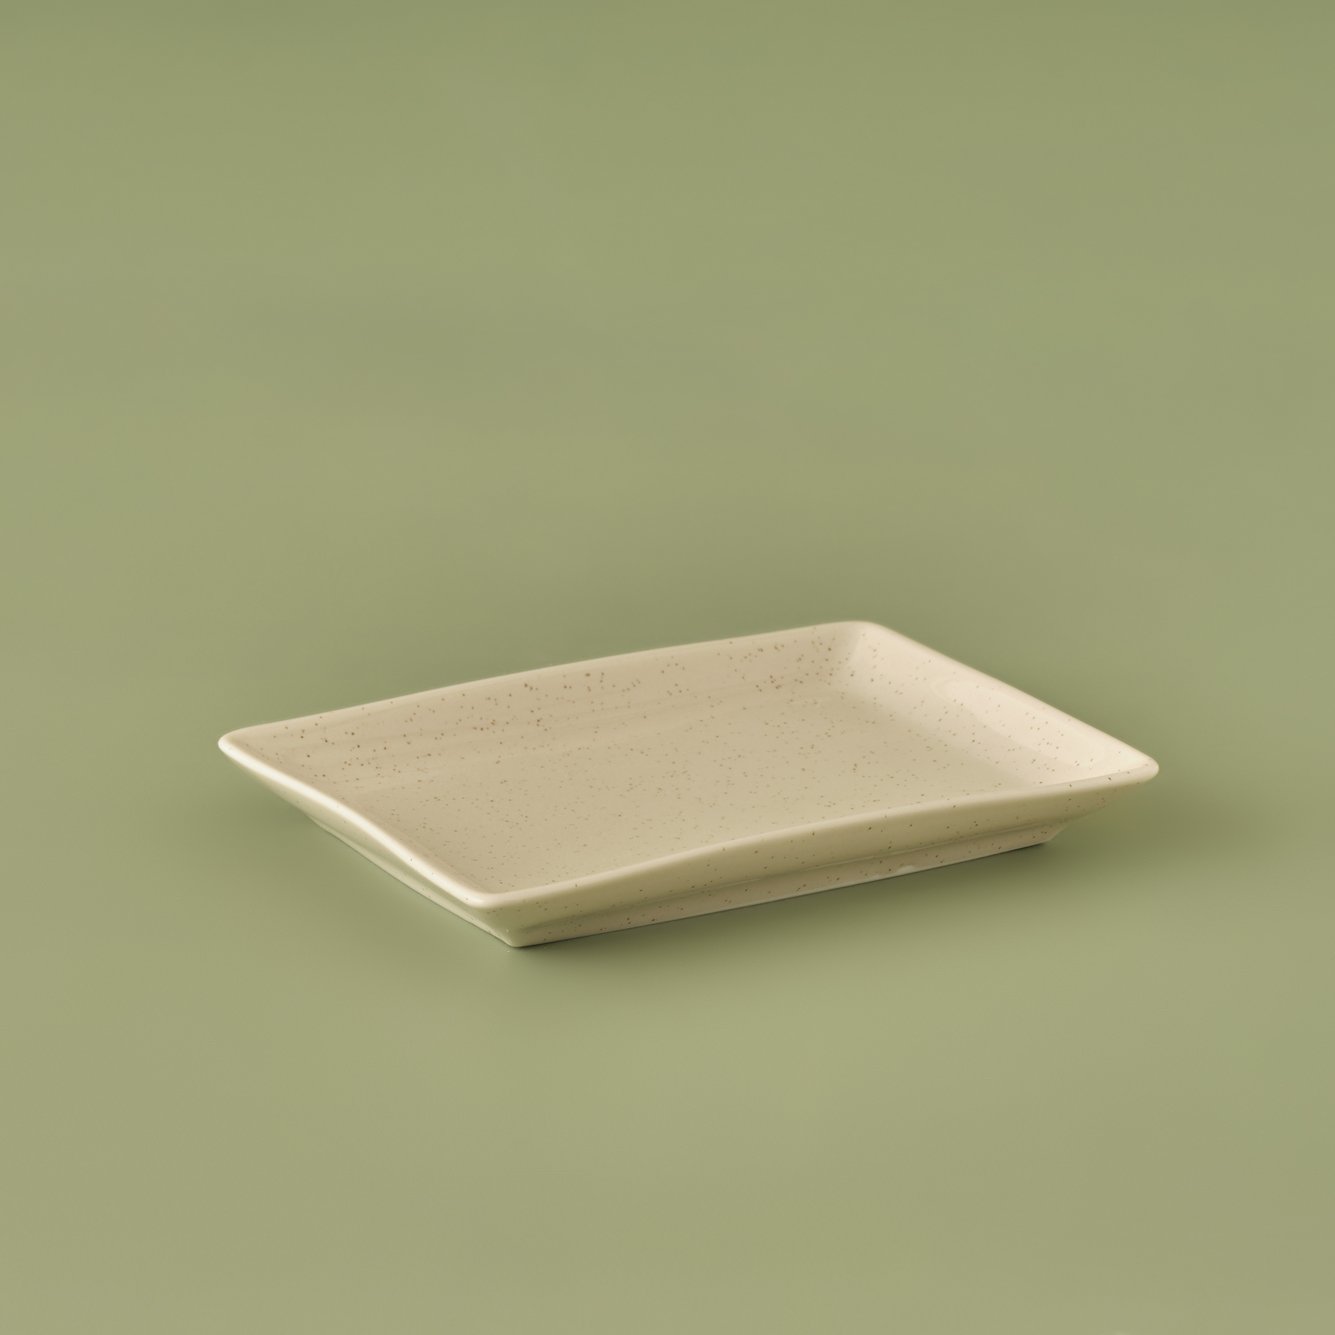 Sand Porselen Sunum Tabağı Krem (13x18 cm)